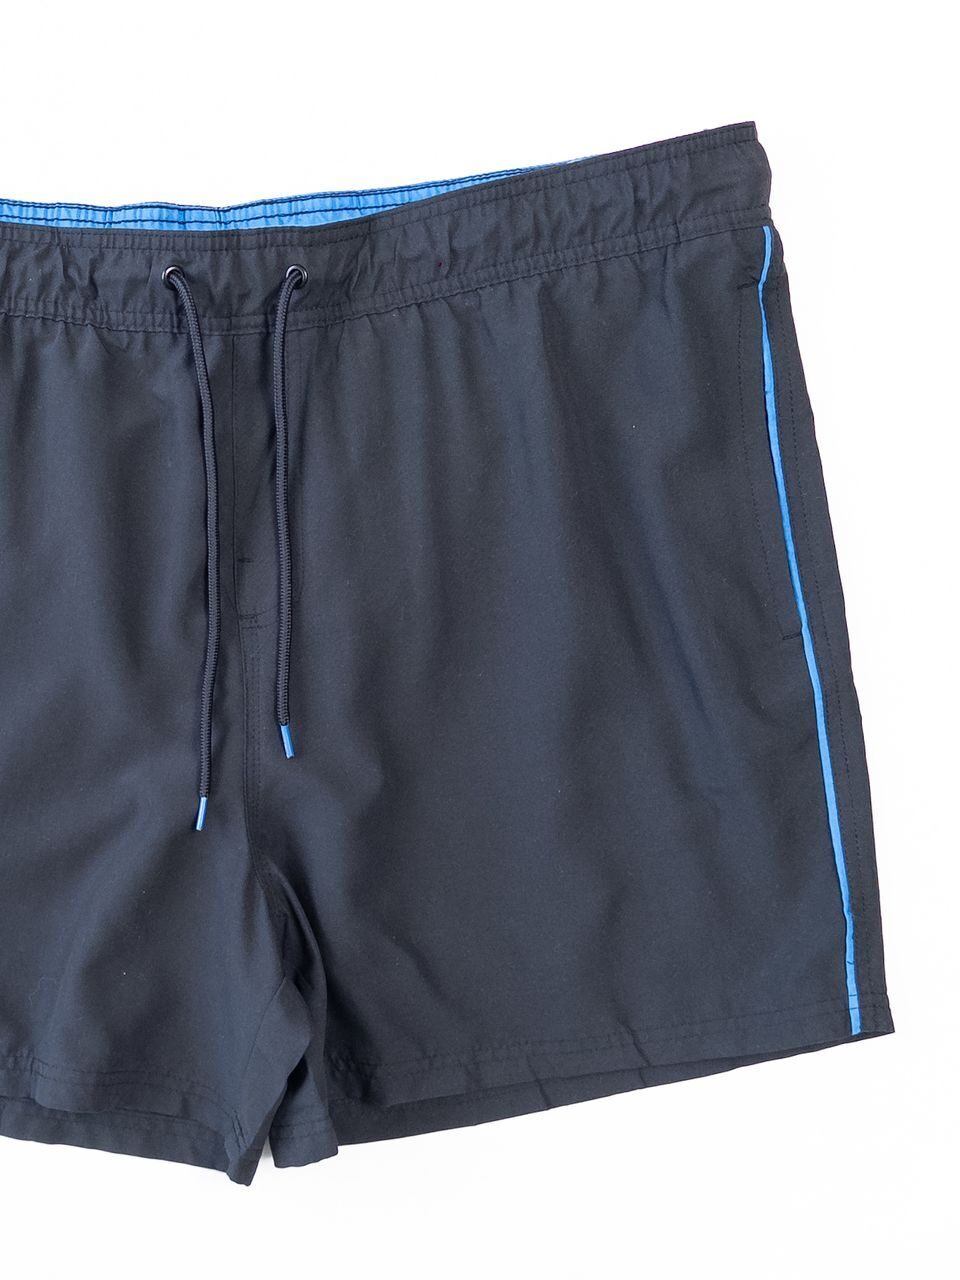 Шорты мужские пляжные с утягивающим шнурком в поясе/карманами цвет черный/синяя полоска размер XXL Livergy